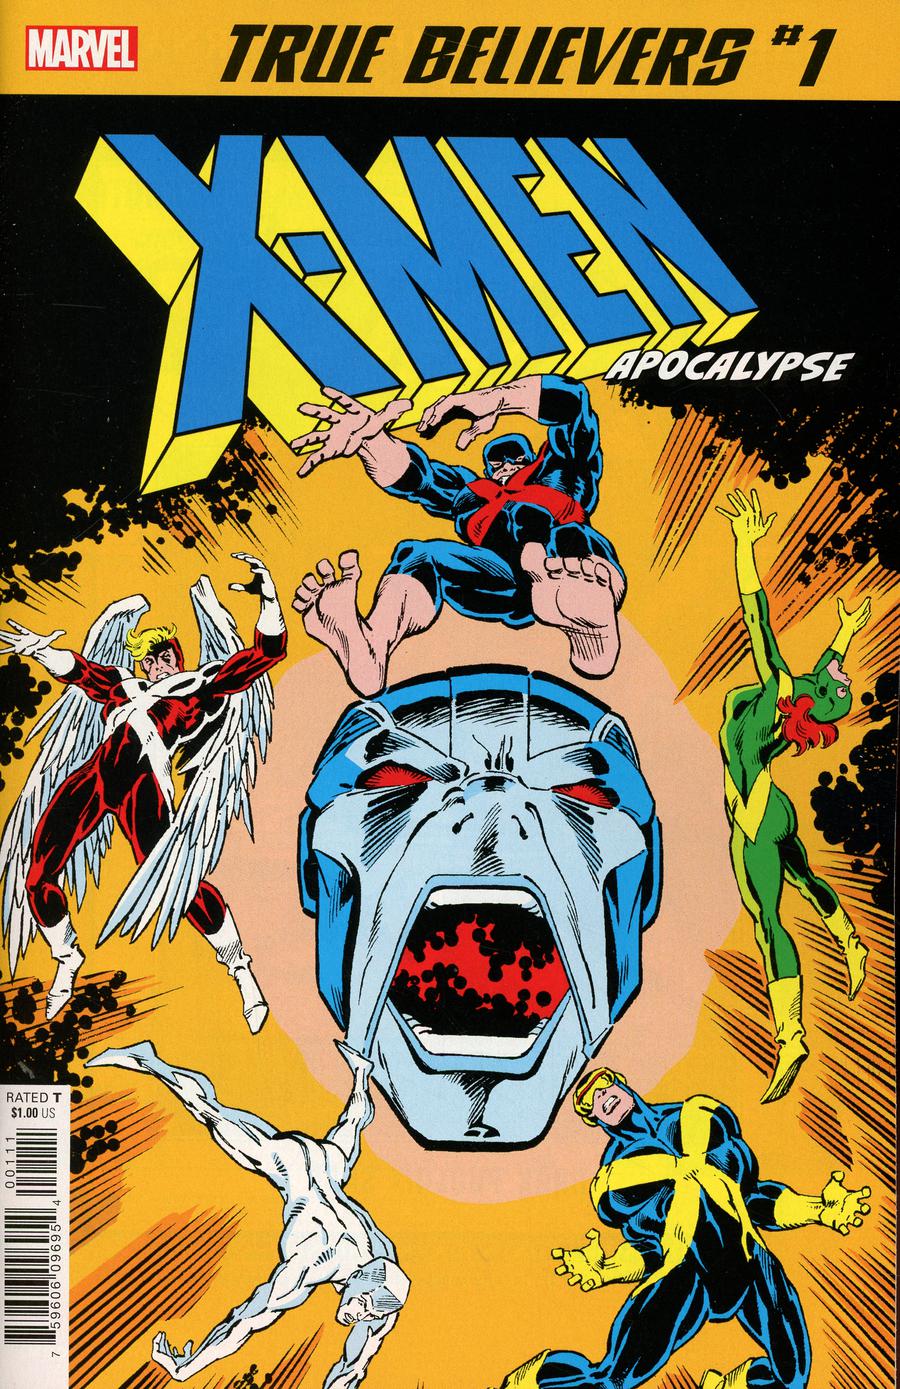 True Believers X-Men Apocalypse #1